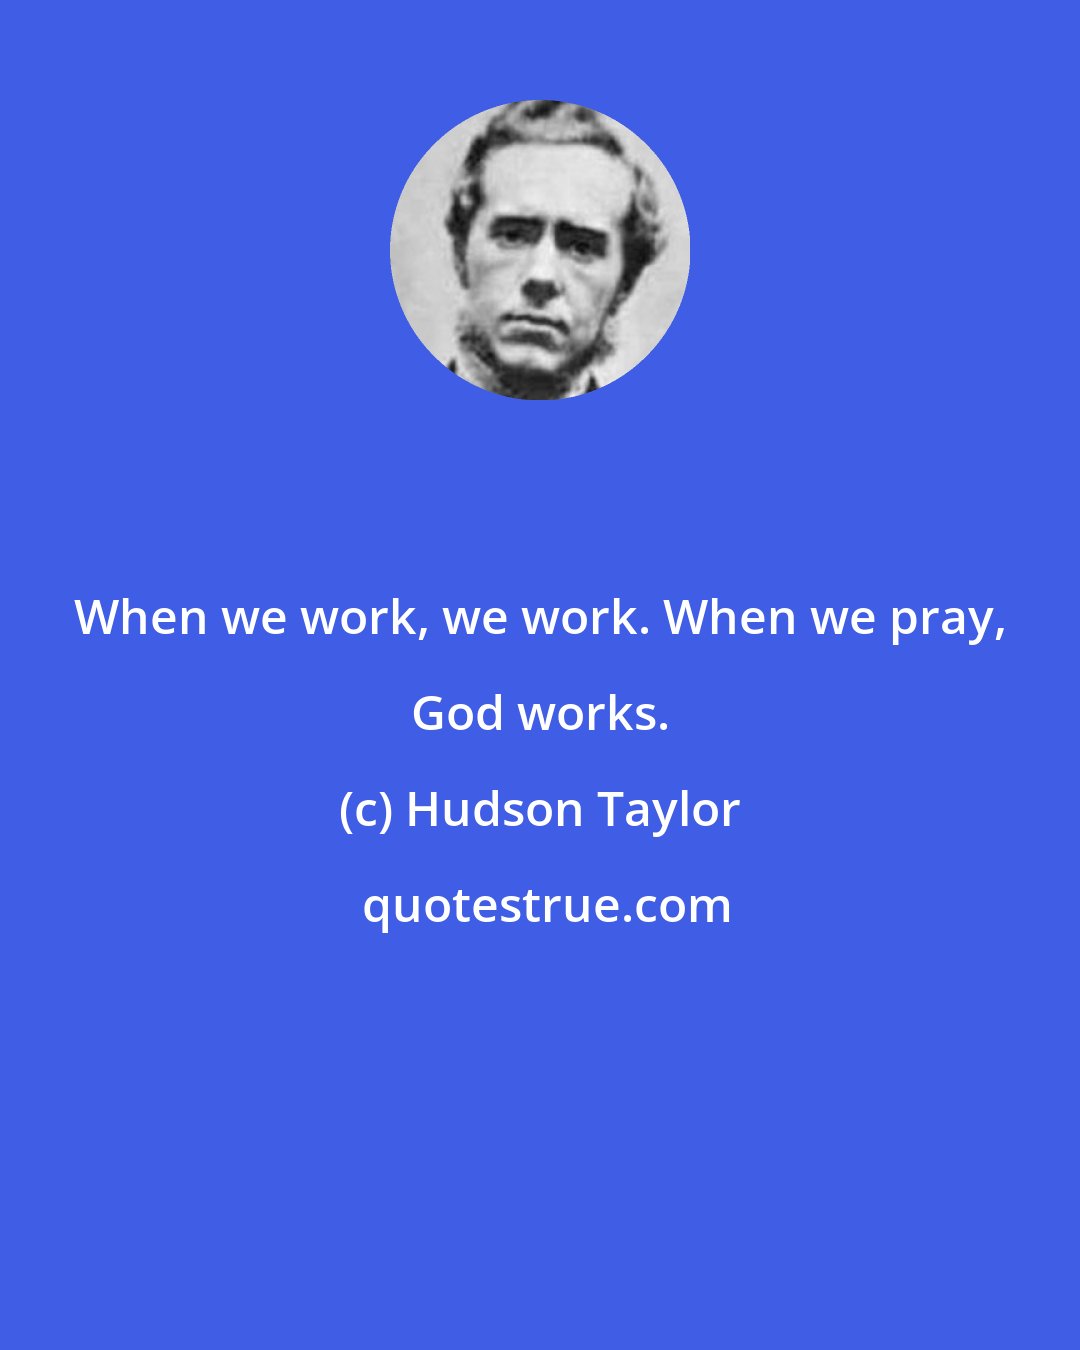 Hudson Taylor: When we work, we work. When we pray, God works.